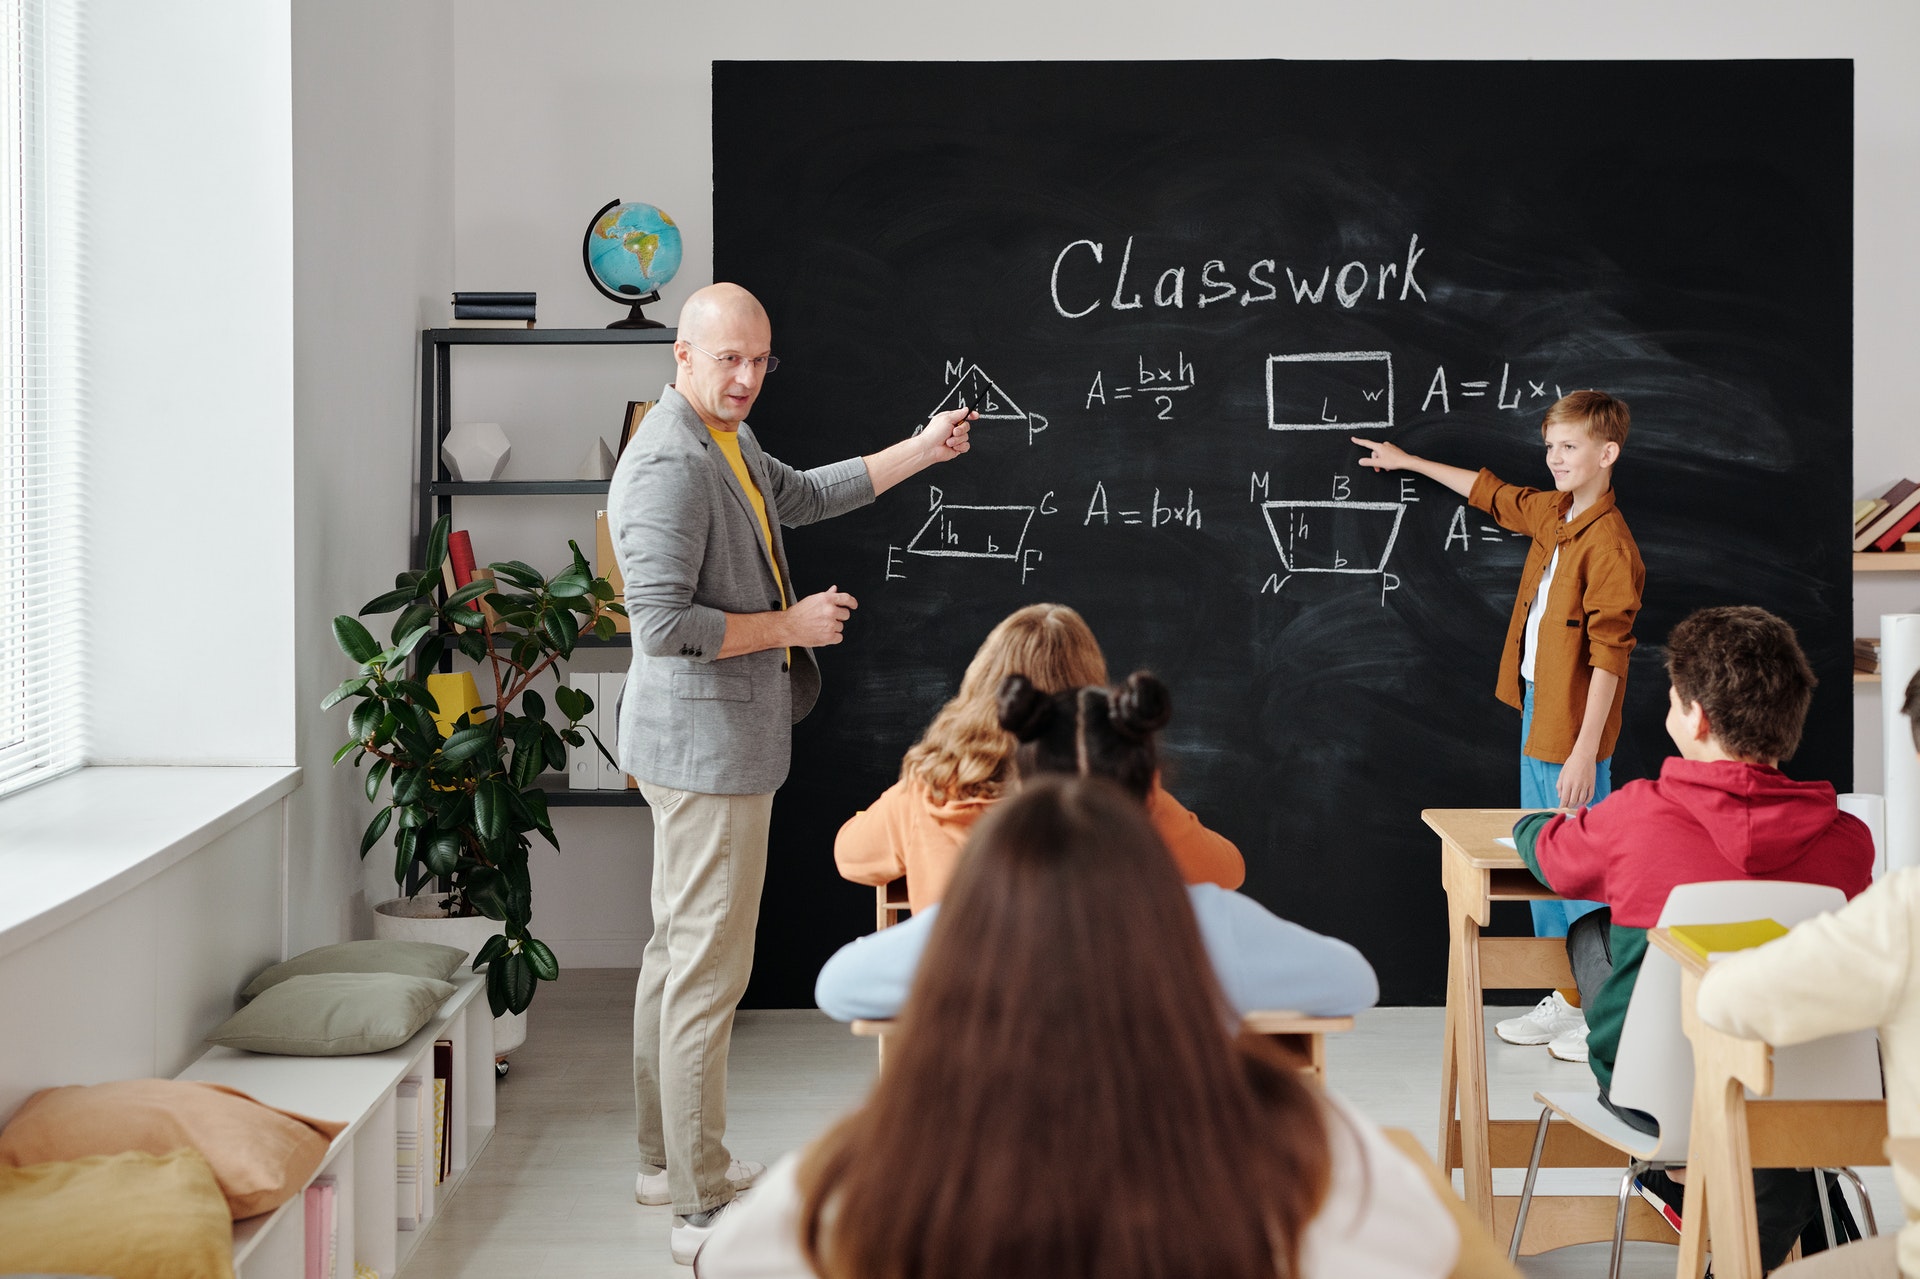 Professor em frente aos alunos em uma sala mostrando algo em um quadro e ao lado de uma criança em pé. Imagem ilustrativa do texto curso de inglês para crianças.